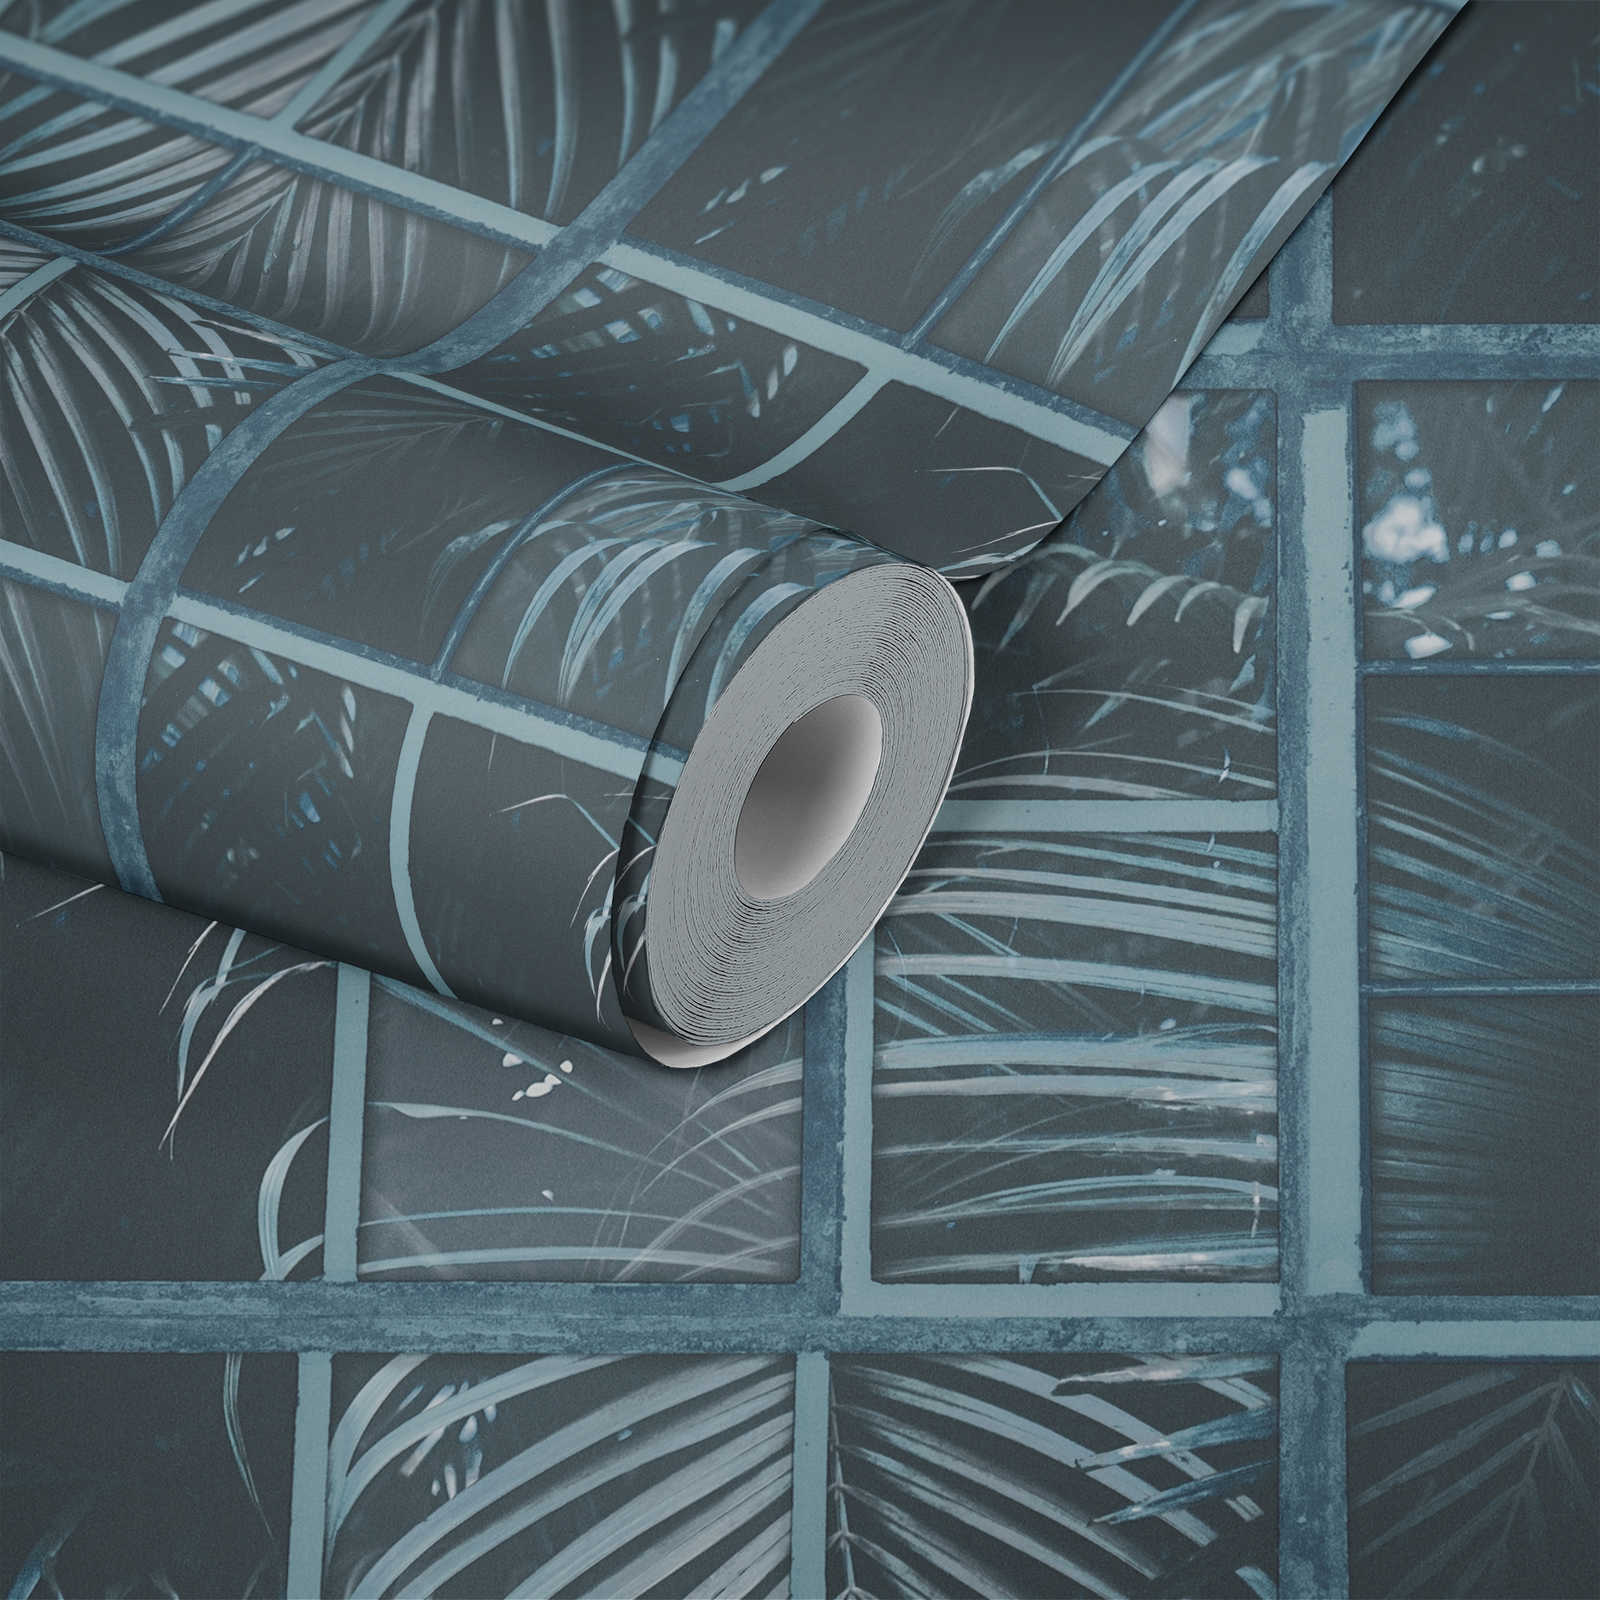             Finestra in carta da parati con vista sulla giungla ed effetto 3D - Blu, Nero
        